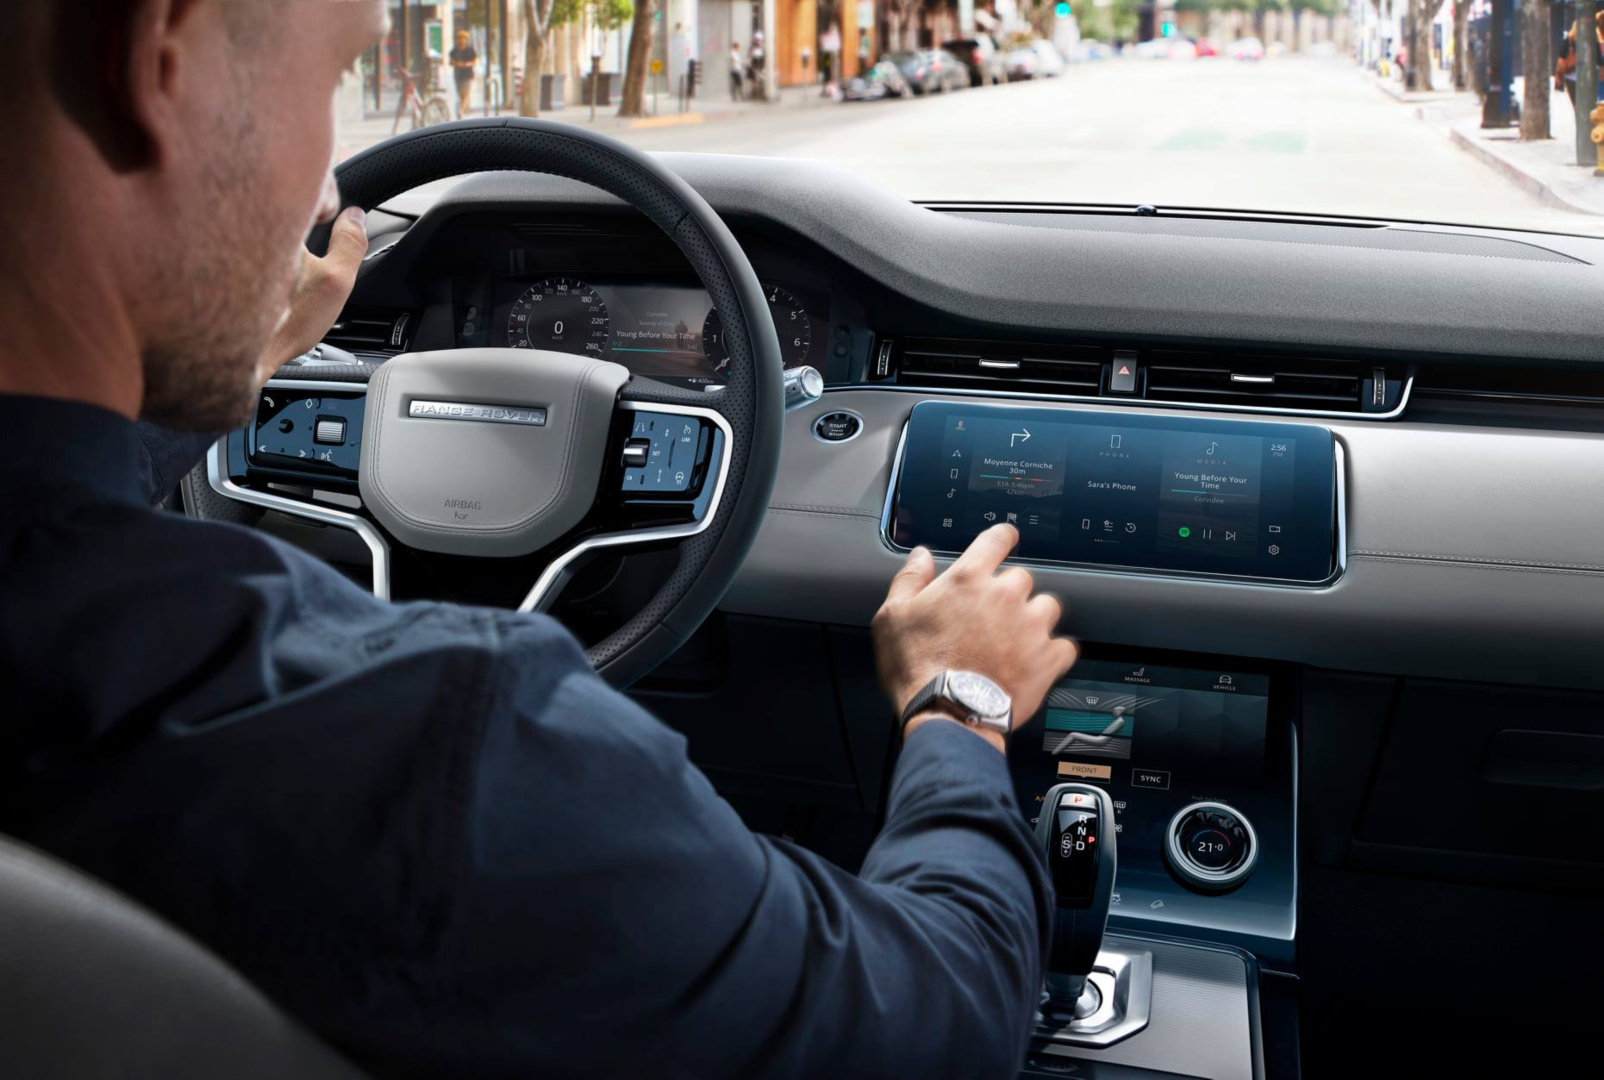 SMALL_圖 10 - 全新 2021 年式 Range Rover Evoque 採用全新仕樣方向盤並搭載 Pivi Pro 智慧科技介面